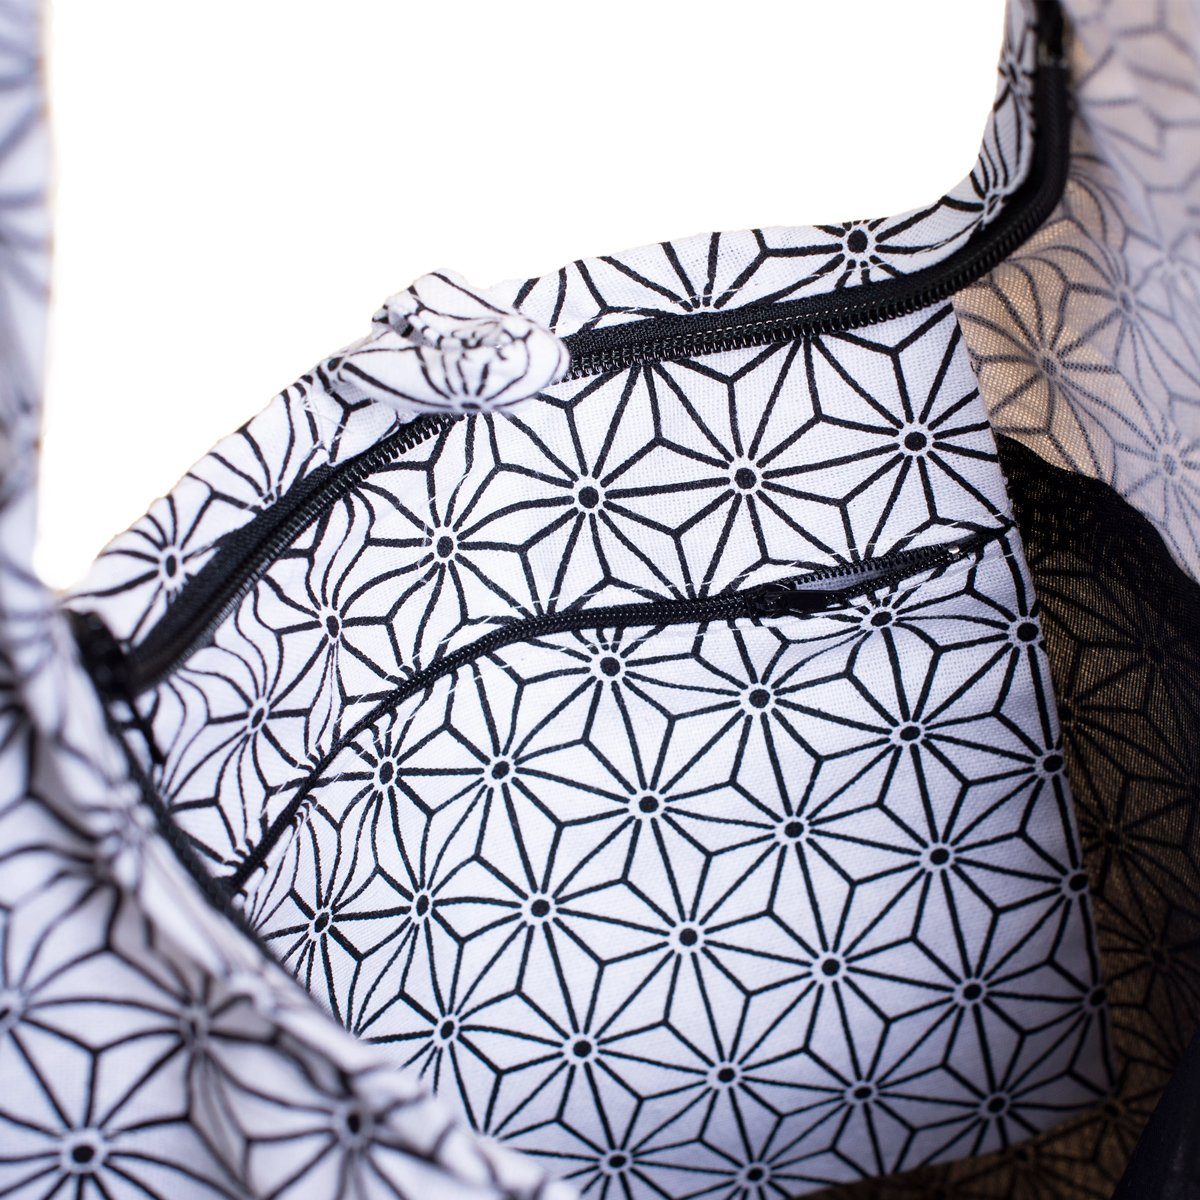 Umhängetasche, Größen geeignet weiß Schultertasche praktische Beuteltasche In 2 auch 100% Baumwolle Asanoha Wickeltasche Geometrix PANASIAM Handtasche als aus Schulterbeutel und